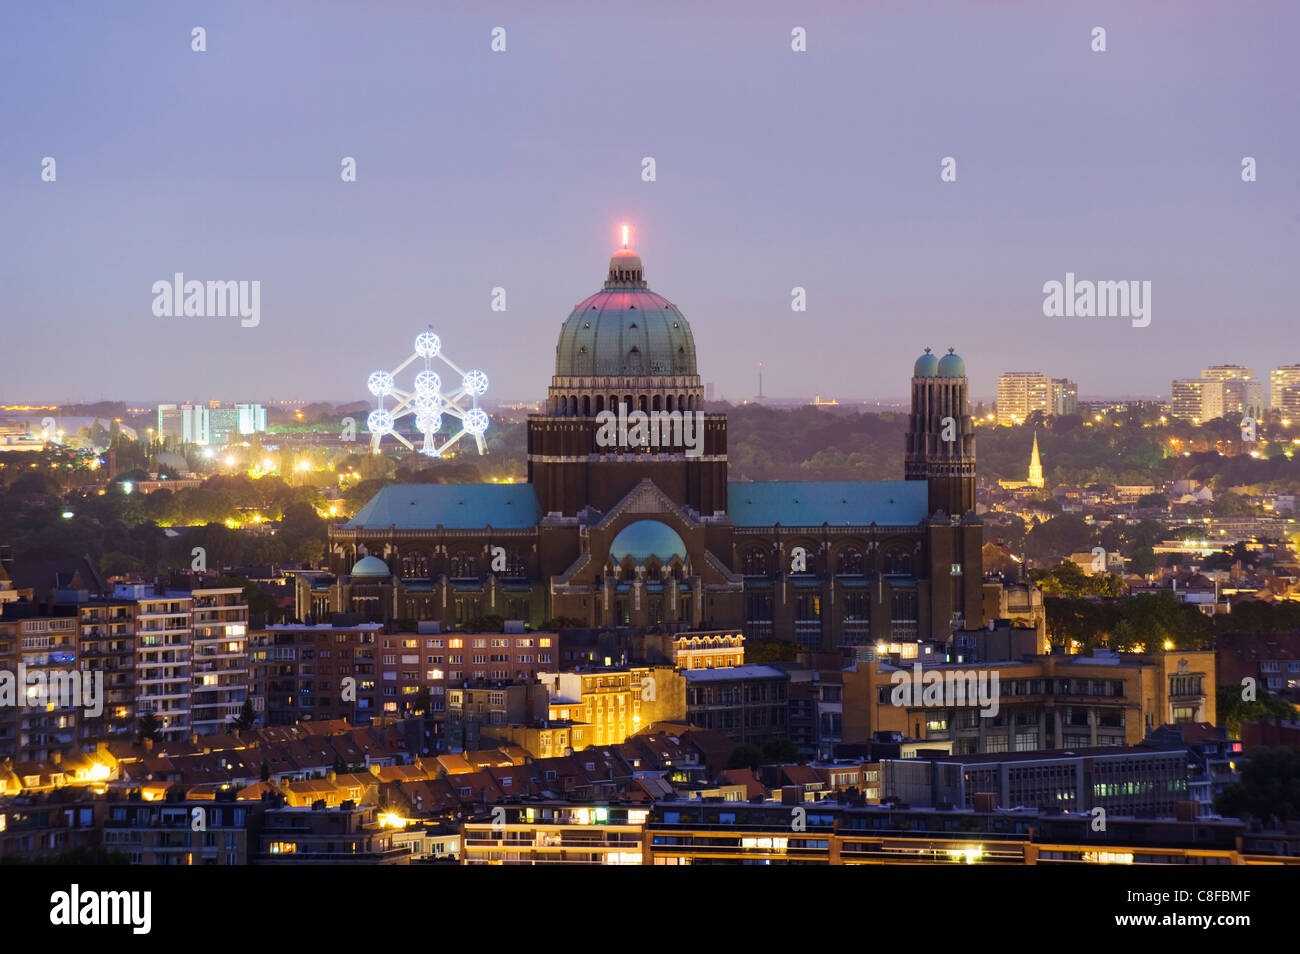 National Catholic Church and Atomium, panoramic view of the city illuminated at night, Brussels, Belgium Stock Photo